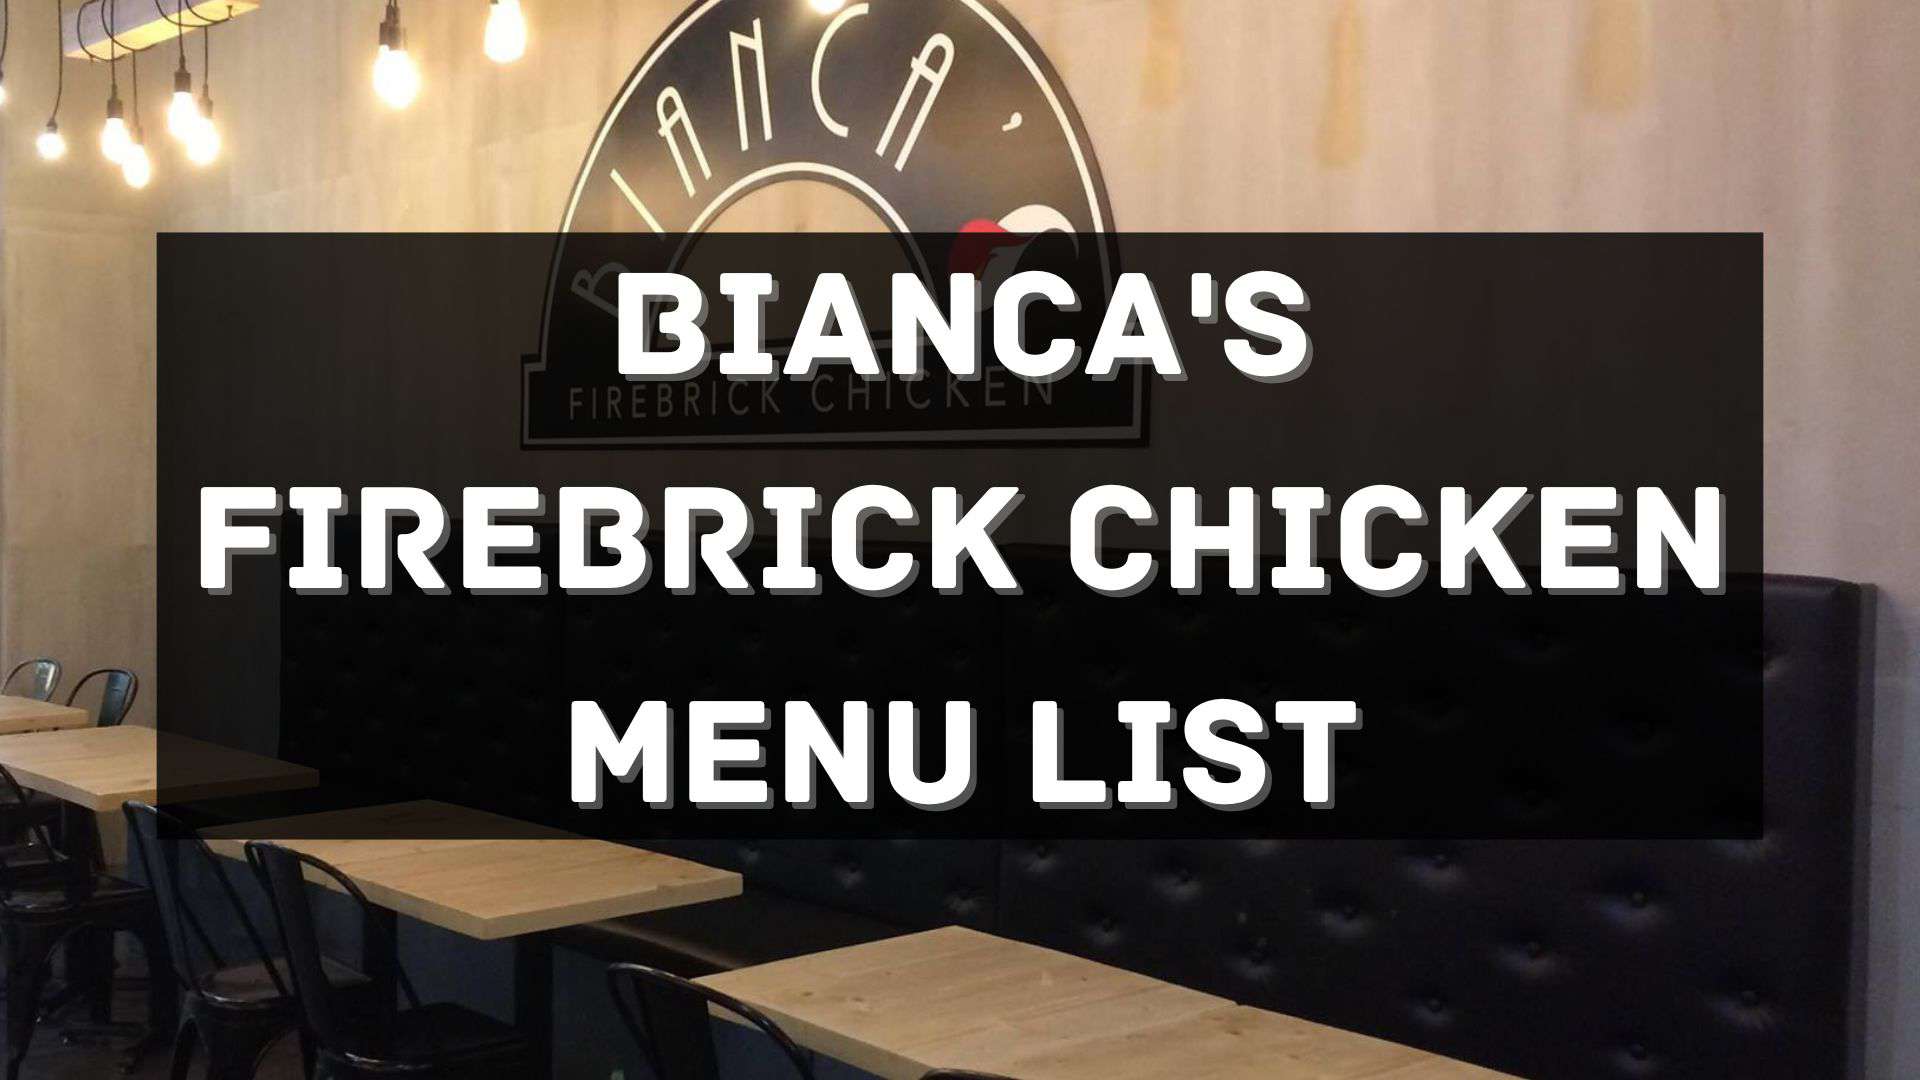 bianca's firebrick chicken menu prices philippines